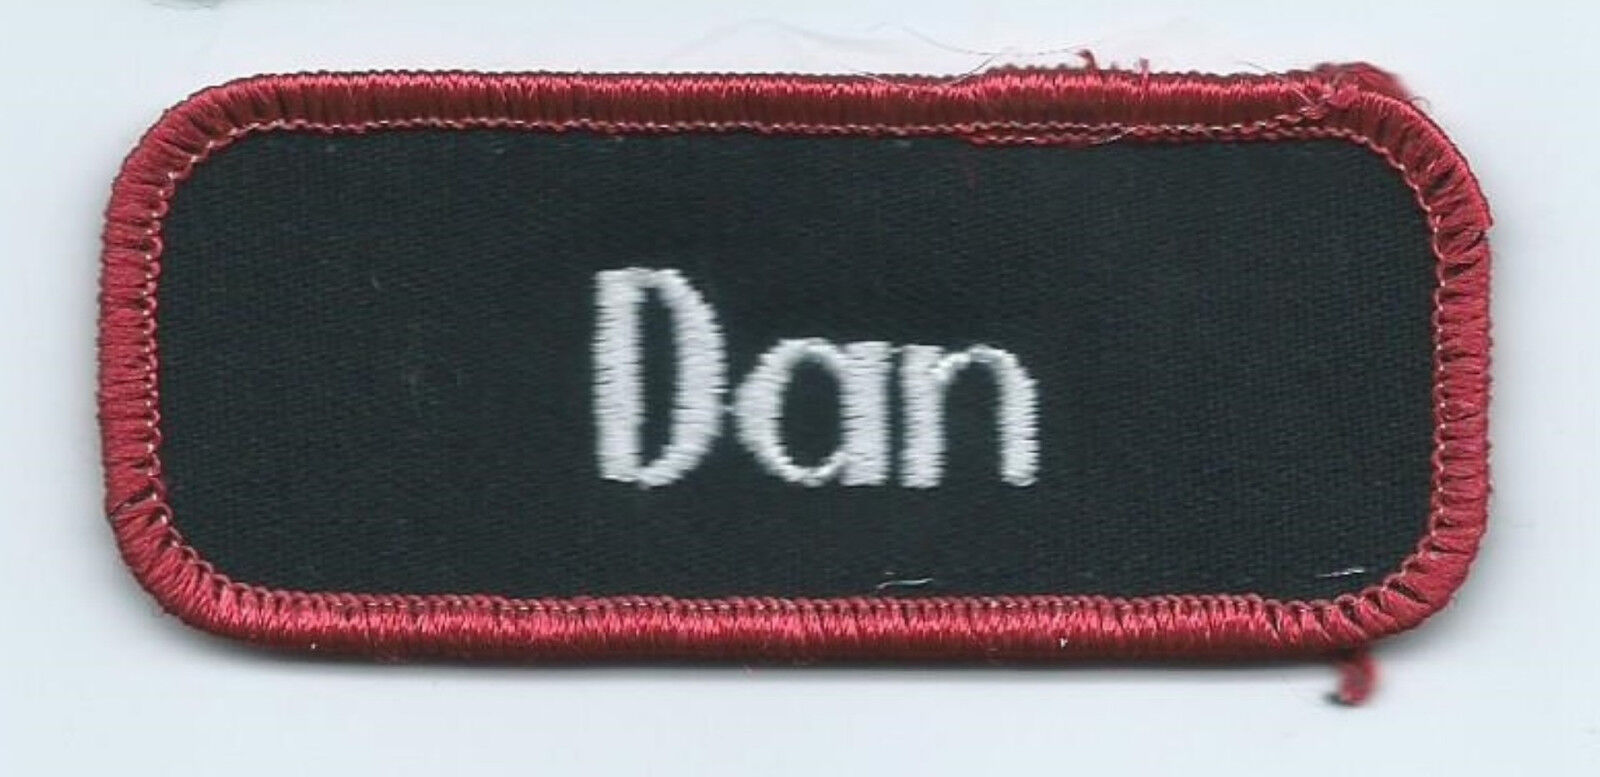 Dan name tag patch 1-5/8 X 3-5/8